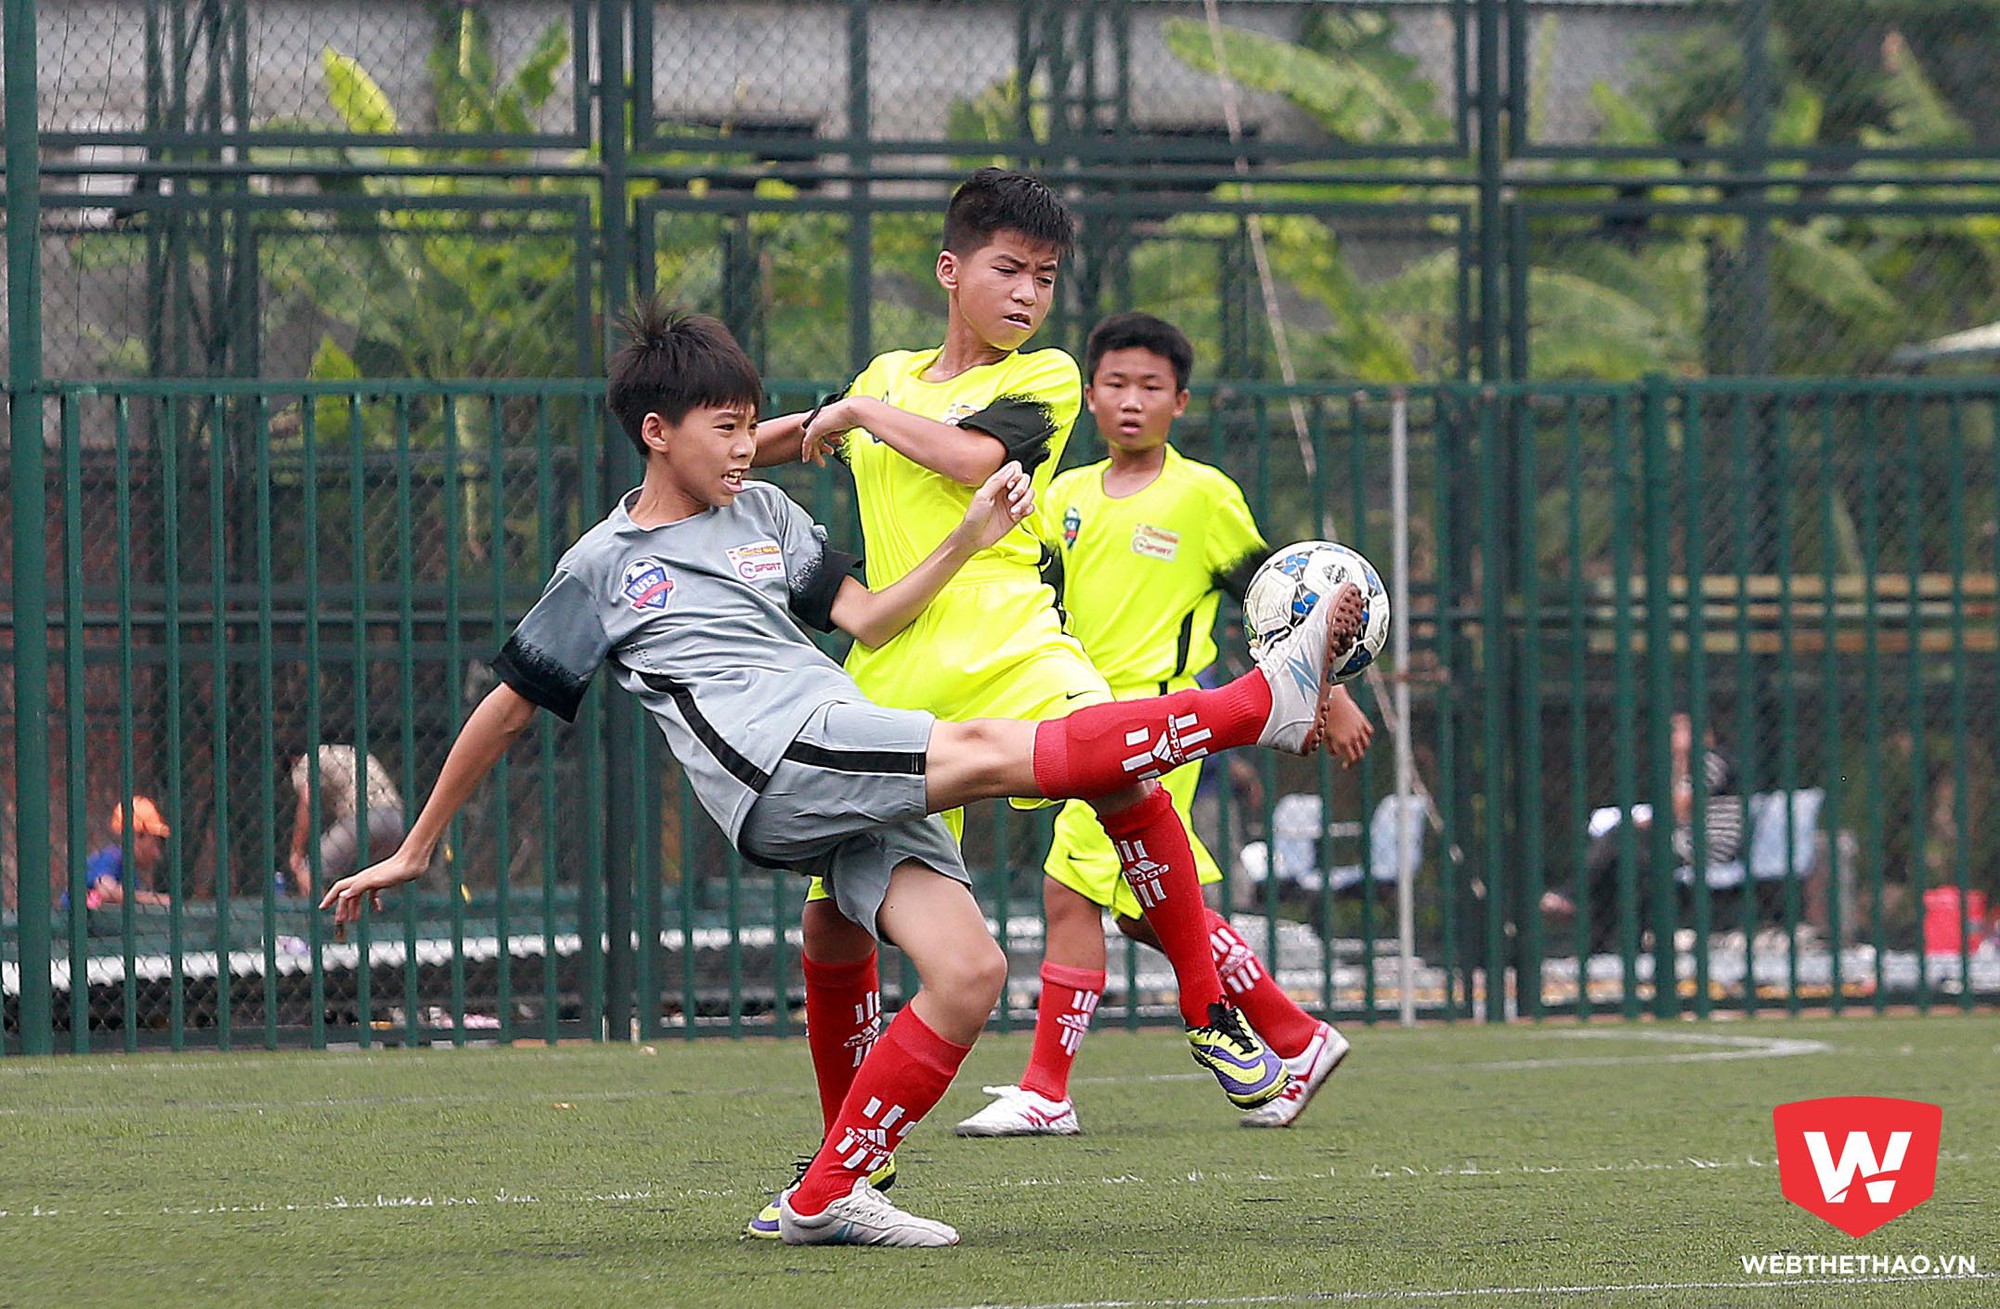 Hai đại diện đến từ Hải Dương và TP Hồ Chí Minh cũng cống hiến cho tất cả khán giả trên sân một trận cầu hấp dẫn với khá nhiều bàn thắng được ghi.